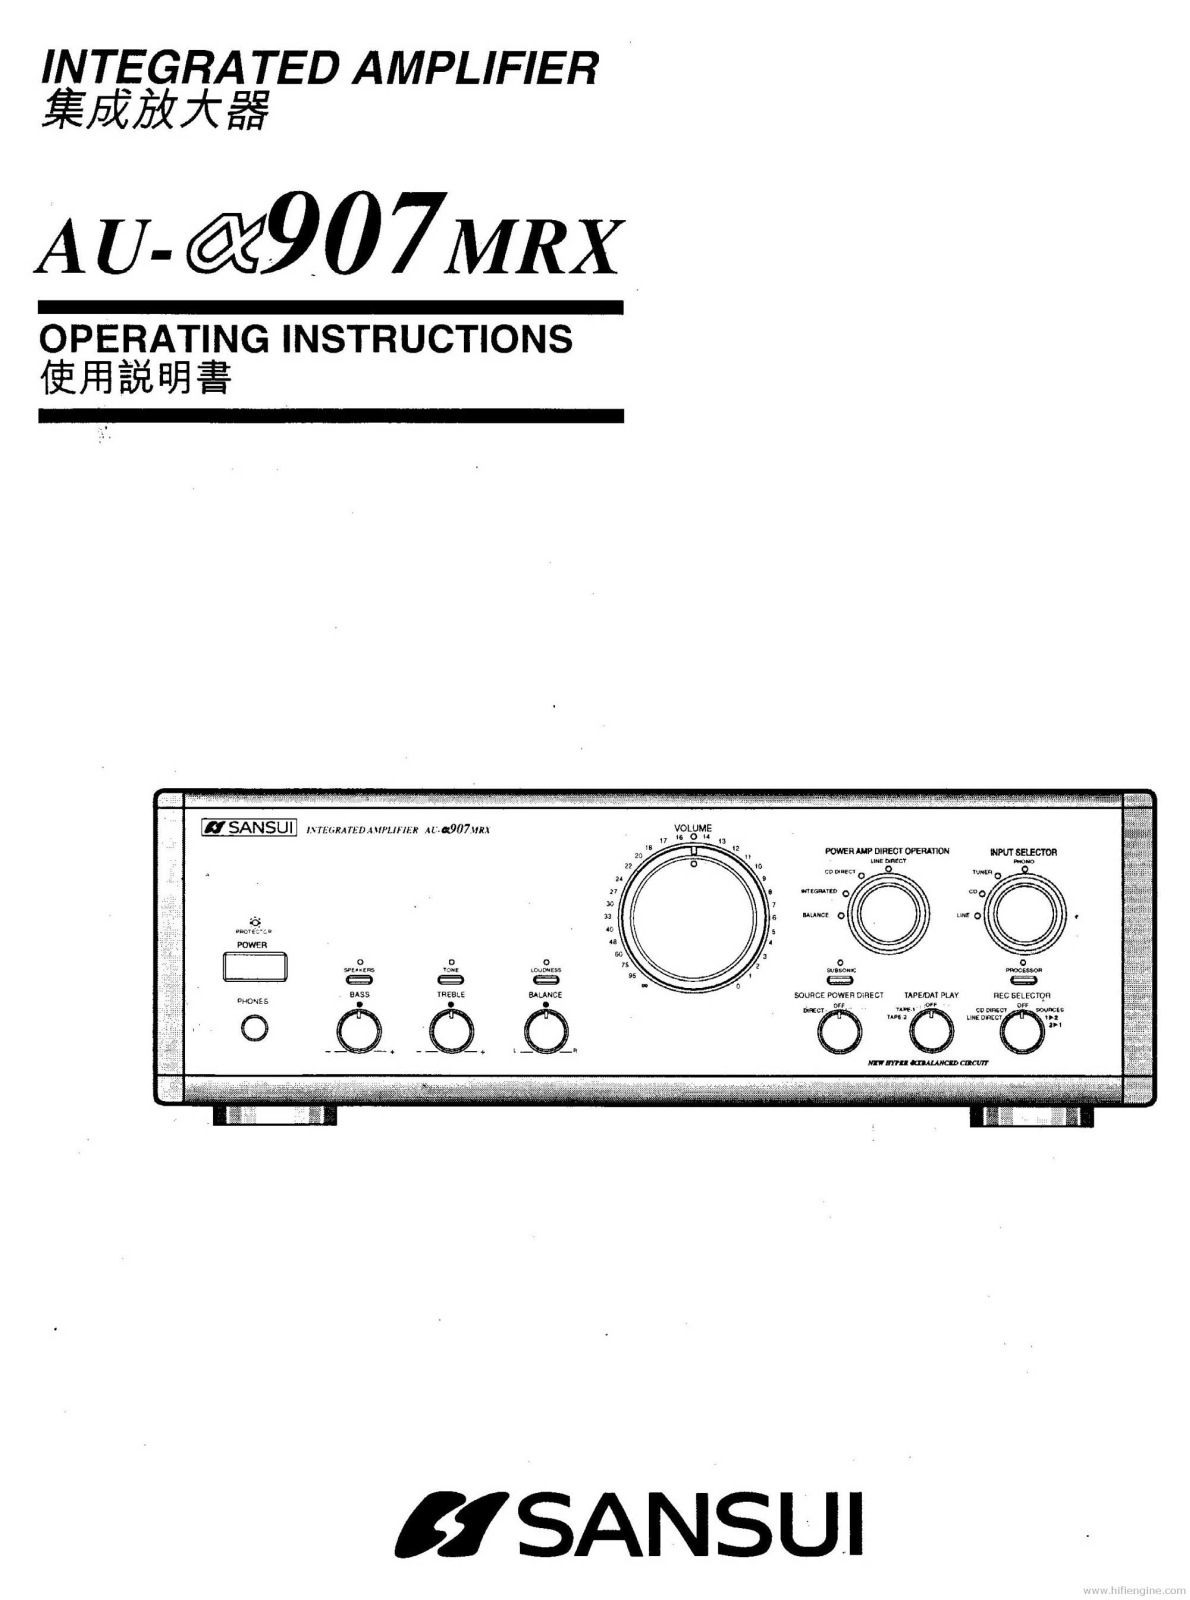 Sansui AU-a907-MRX Owners Manual